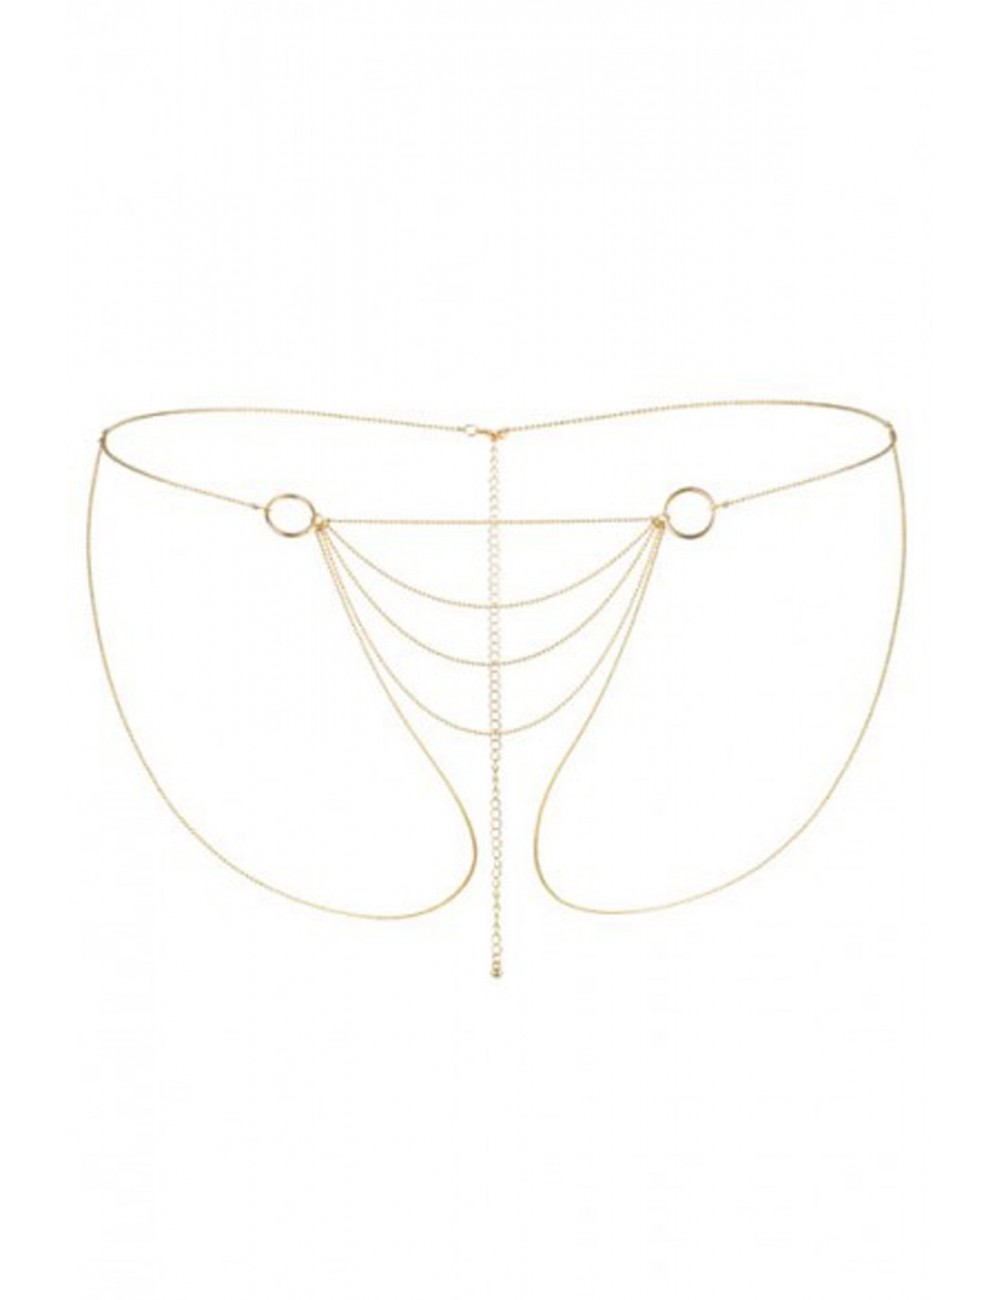 Lingerie - Bijoux - Magnifique Chaîne dorée Bikini pour short - BI-03304 - Bijoux Indiscrets